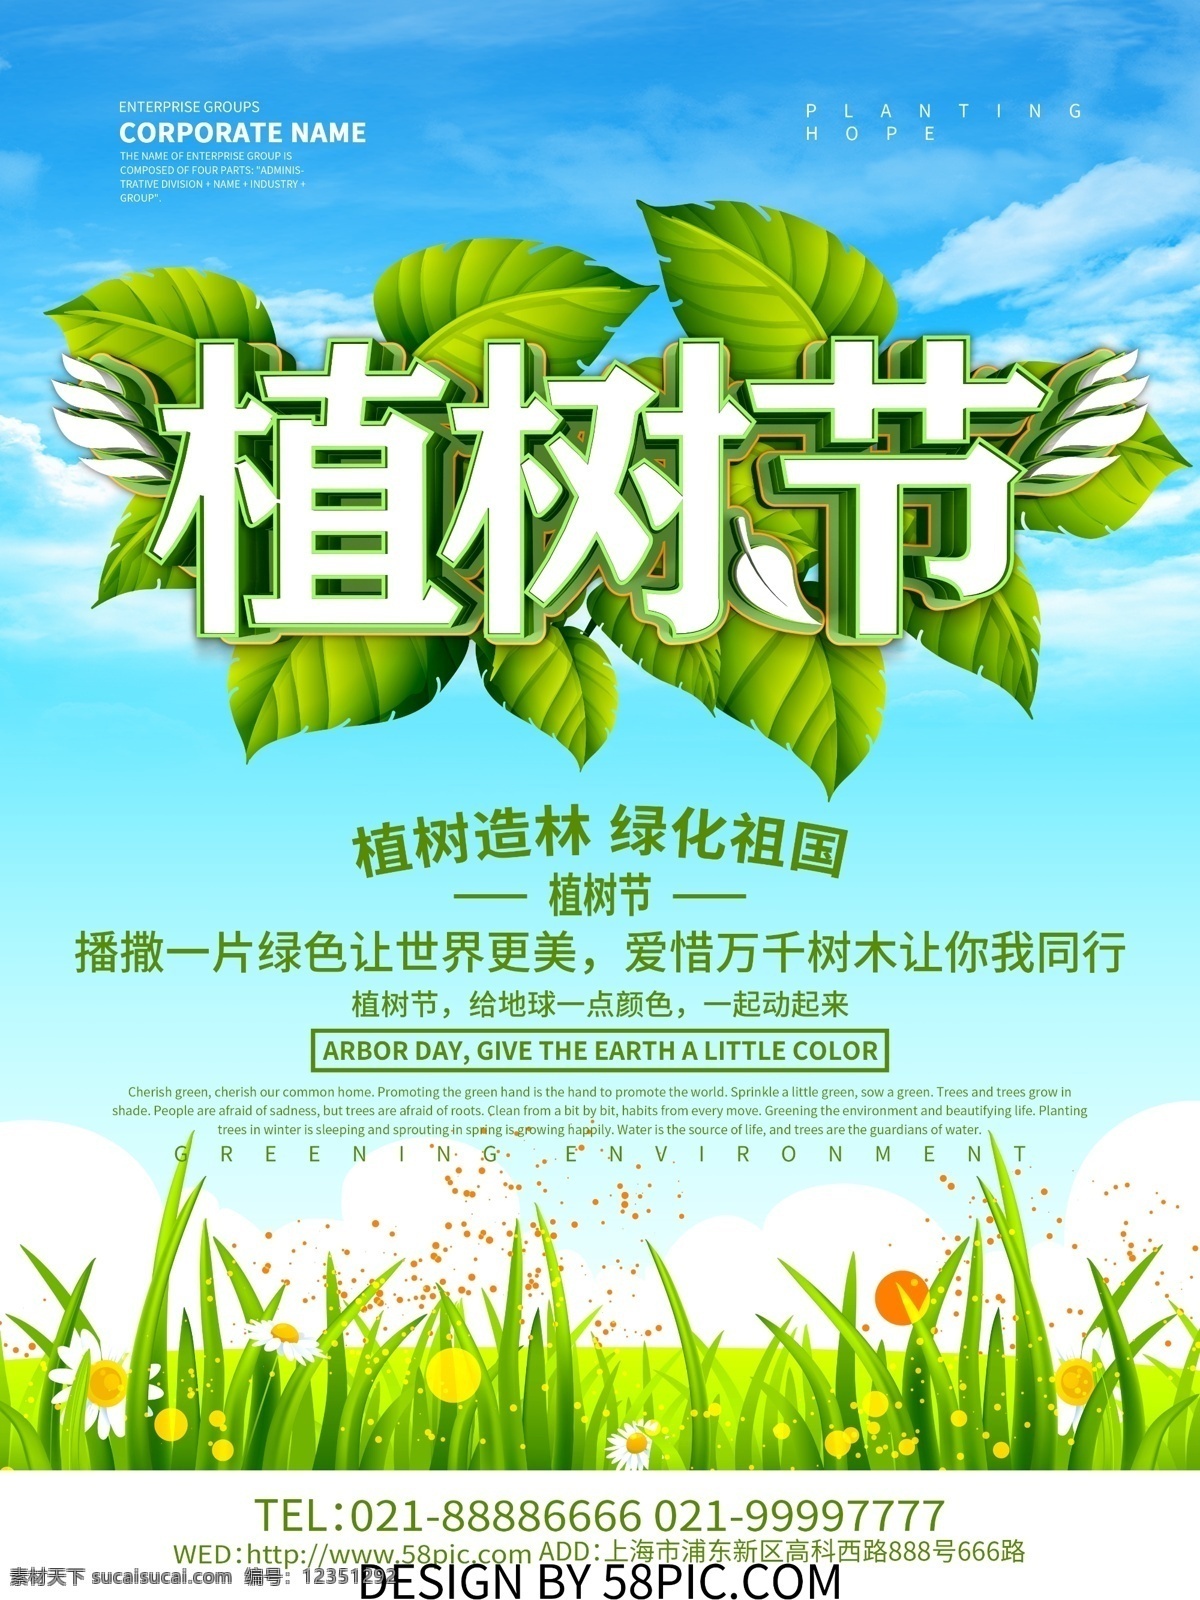 植树节 保护 环境 宣传海报 植树节宣传 绿色环保 植树节背景 植树节海报